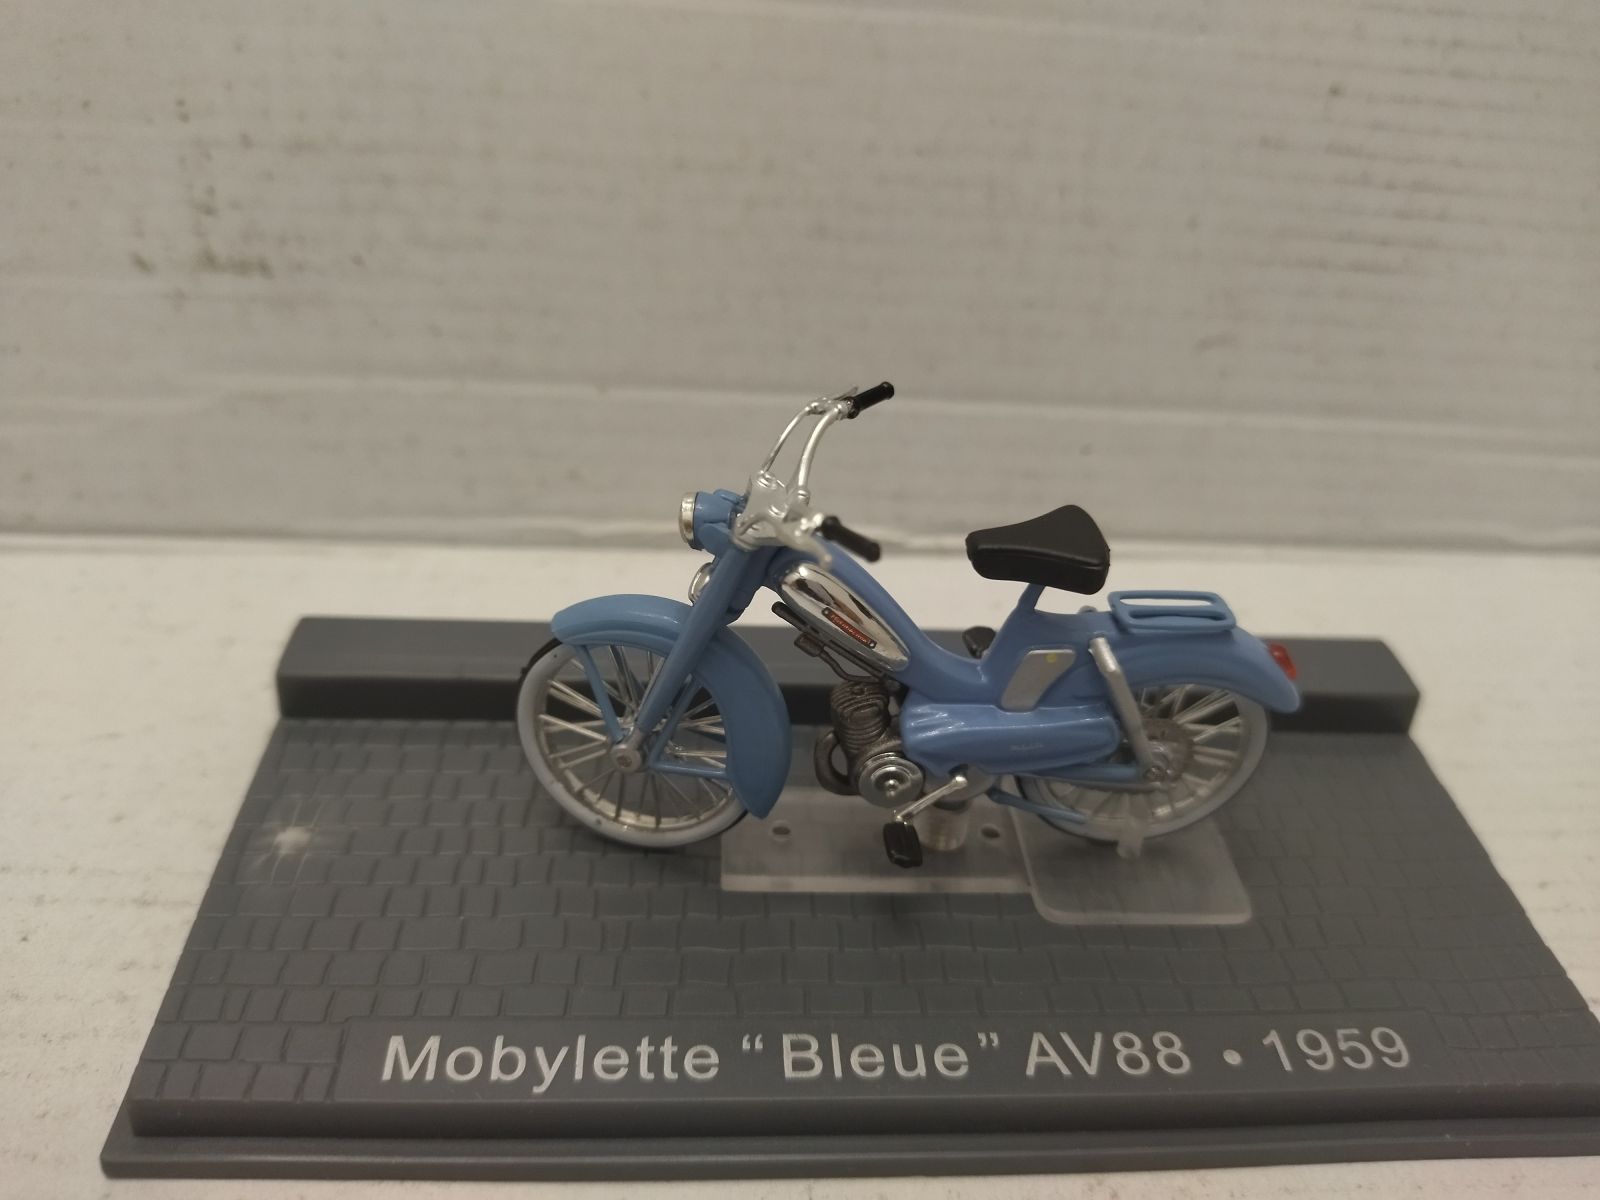 MOBYLETTE BLEUE AV88 1959 CLASSIC MOTO/BIKE 1:24 ALTAYA IXO - BCN